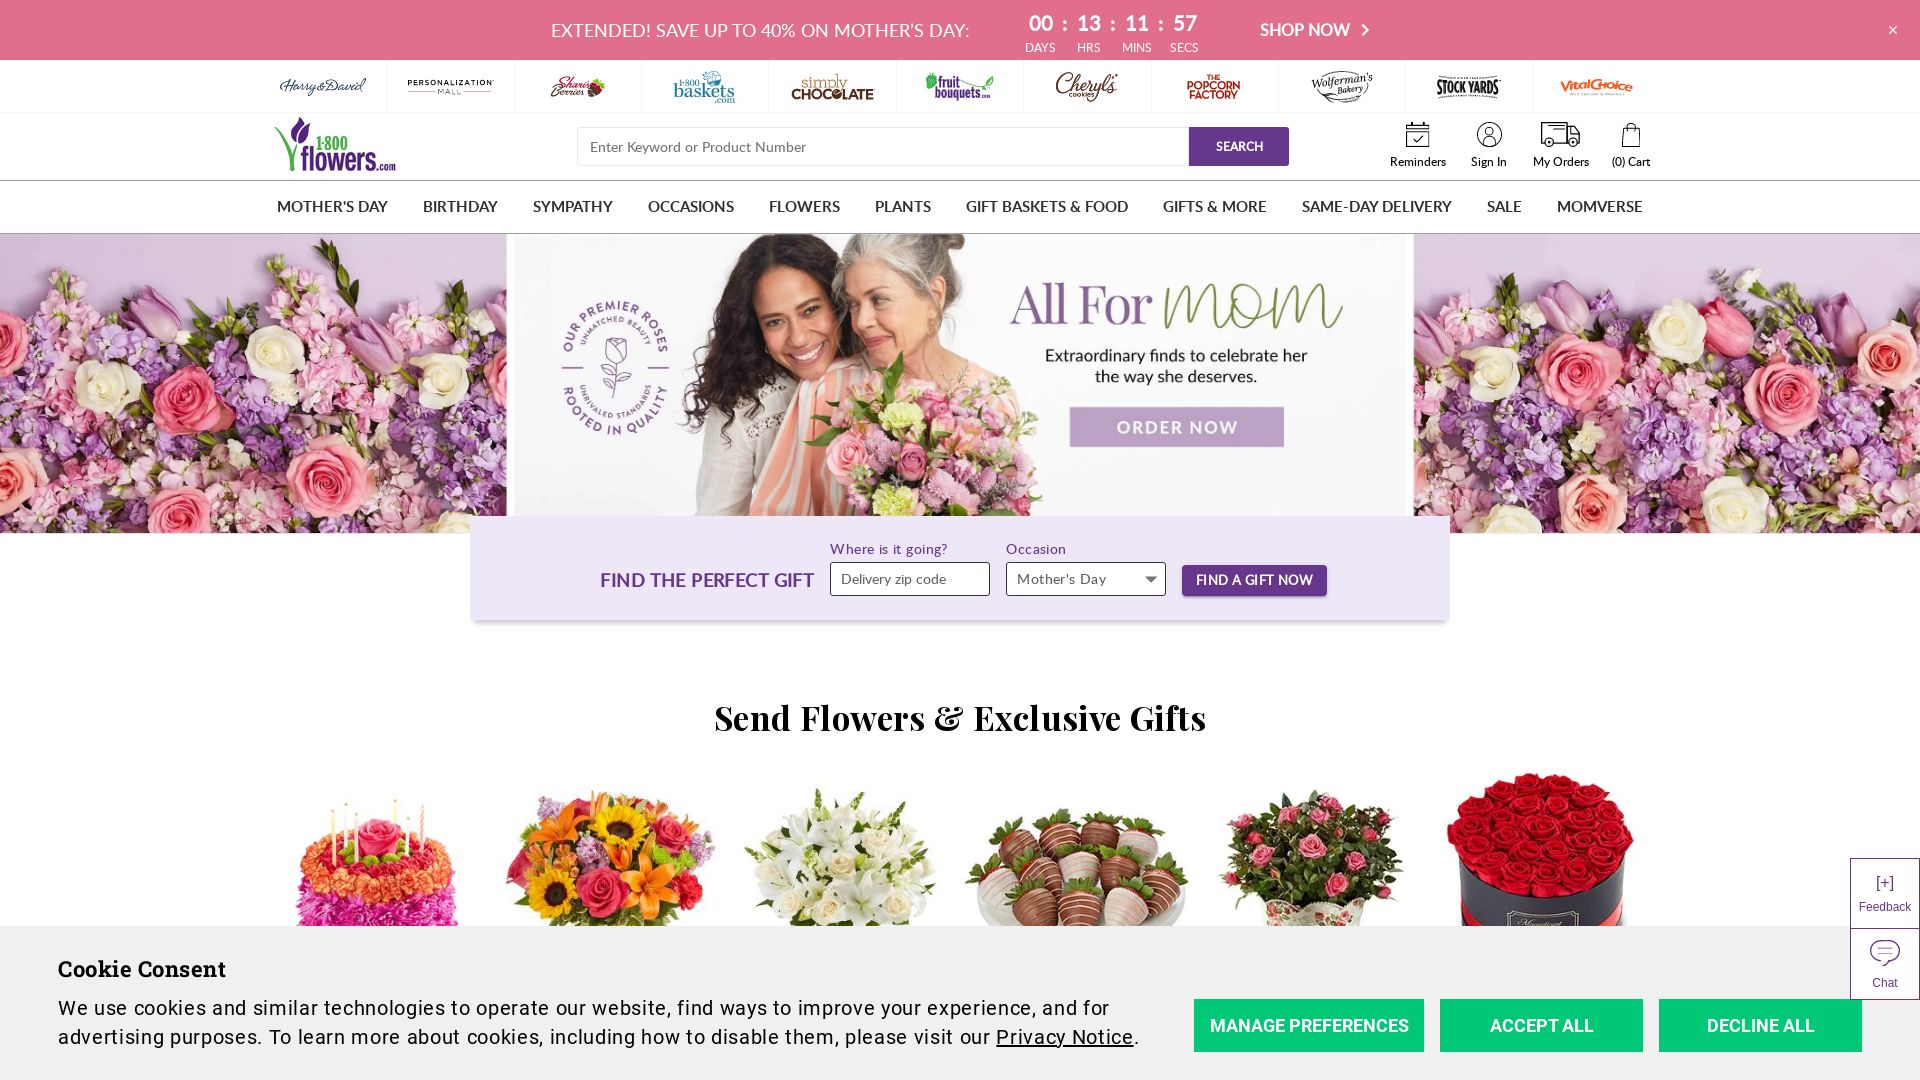 État du site web 1800flowers.com est   EN LIGNE